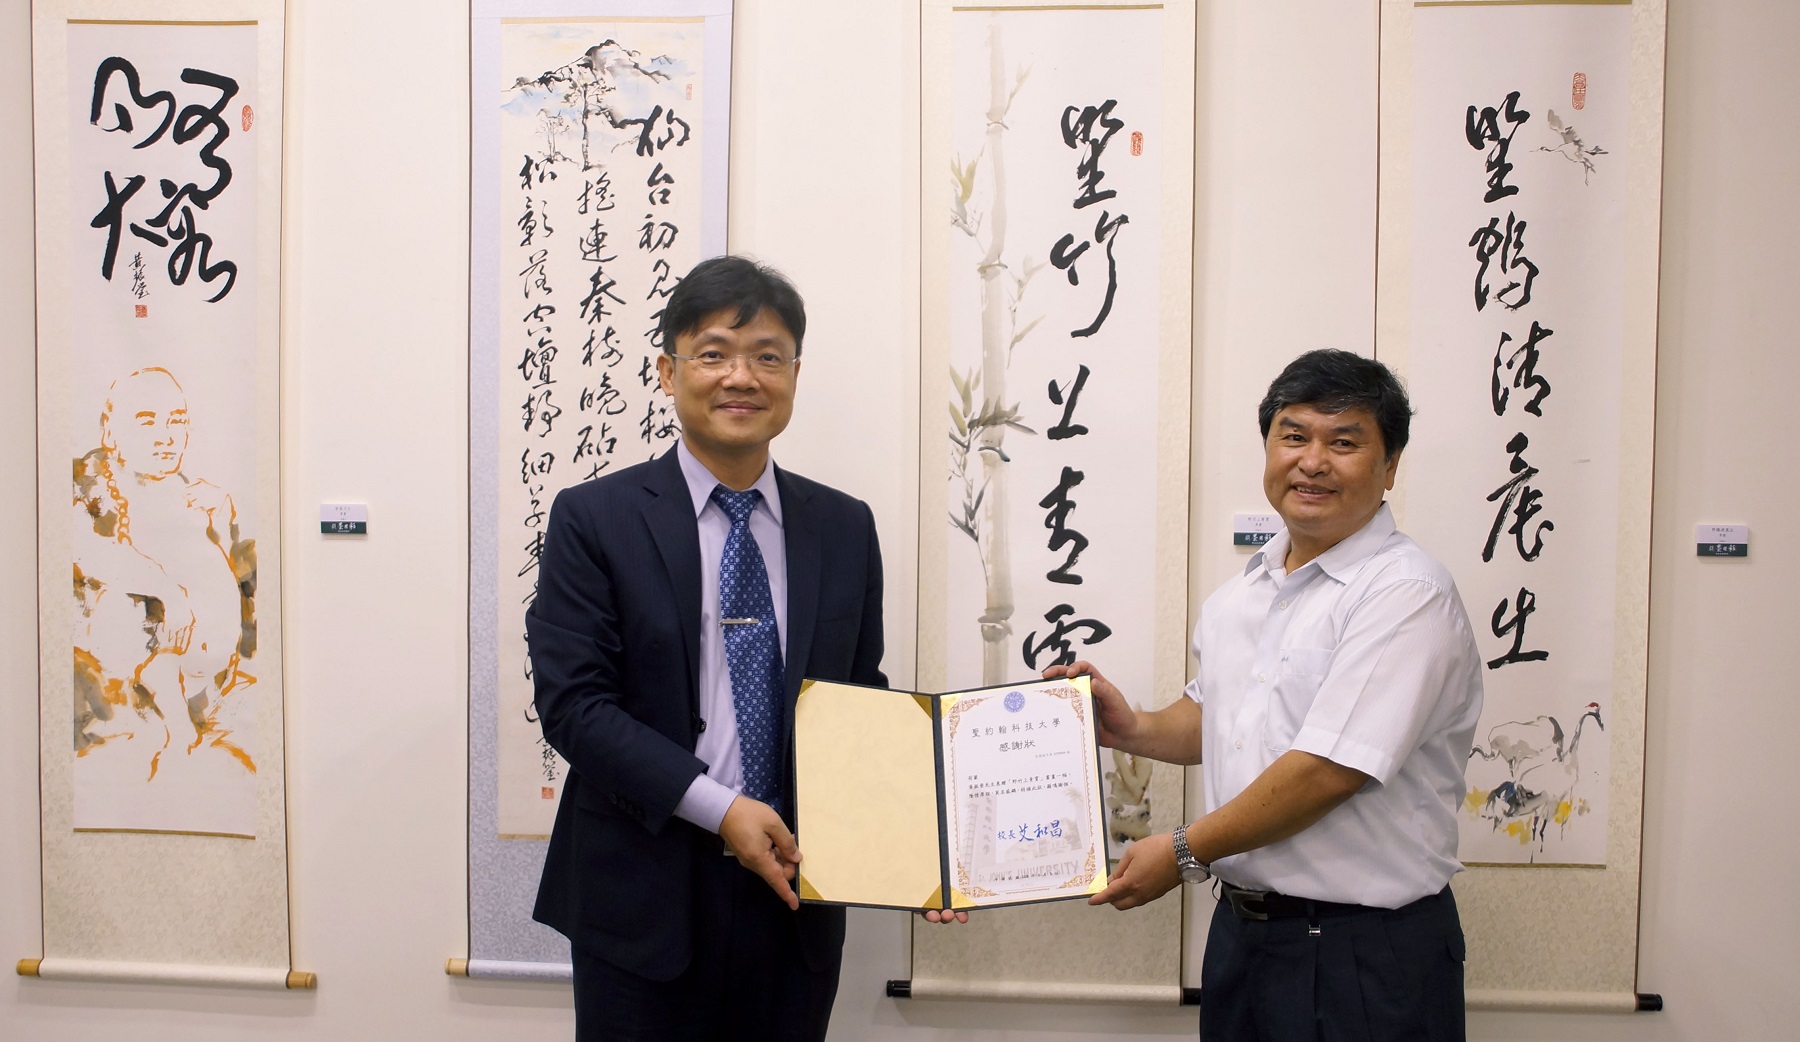 黃振瑩藝術家（右）得知聖約翰校徽裡的竹子代表上海聖約翰大學，特別致贈「野竹上青霄」書畫一幅，提供藝文中心典藏，艾和昌校長（左）致贈感謝狀表達感謝